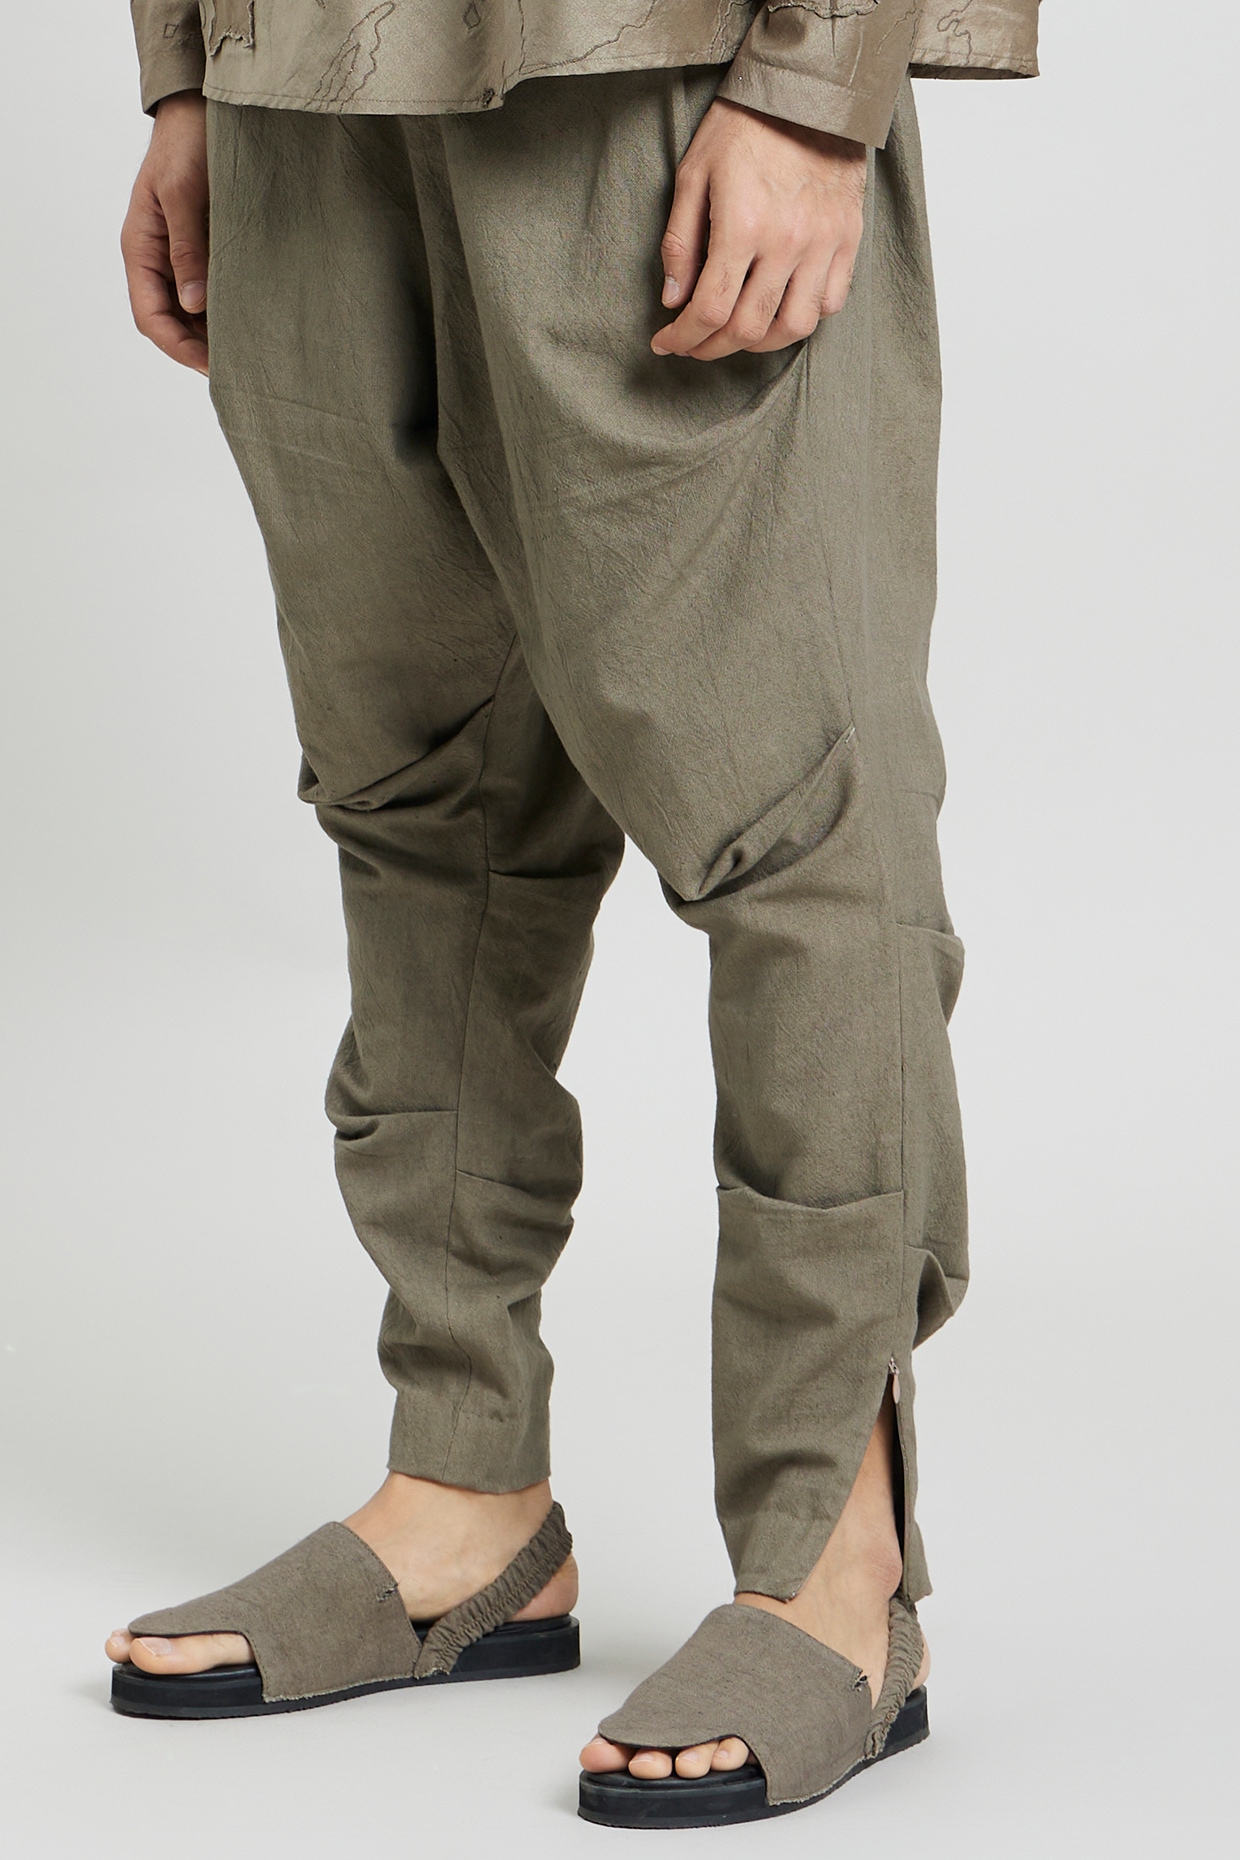 Khadi Trousers - Buy Khadi Trousers online in India